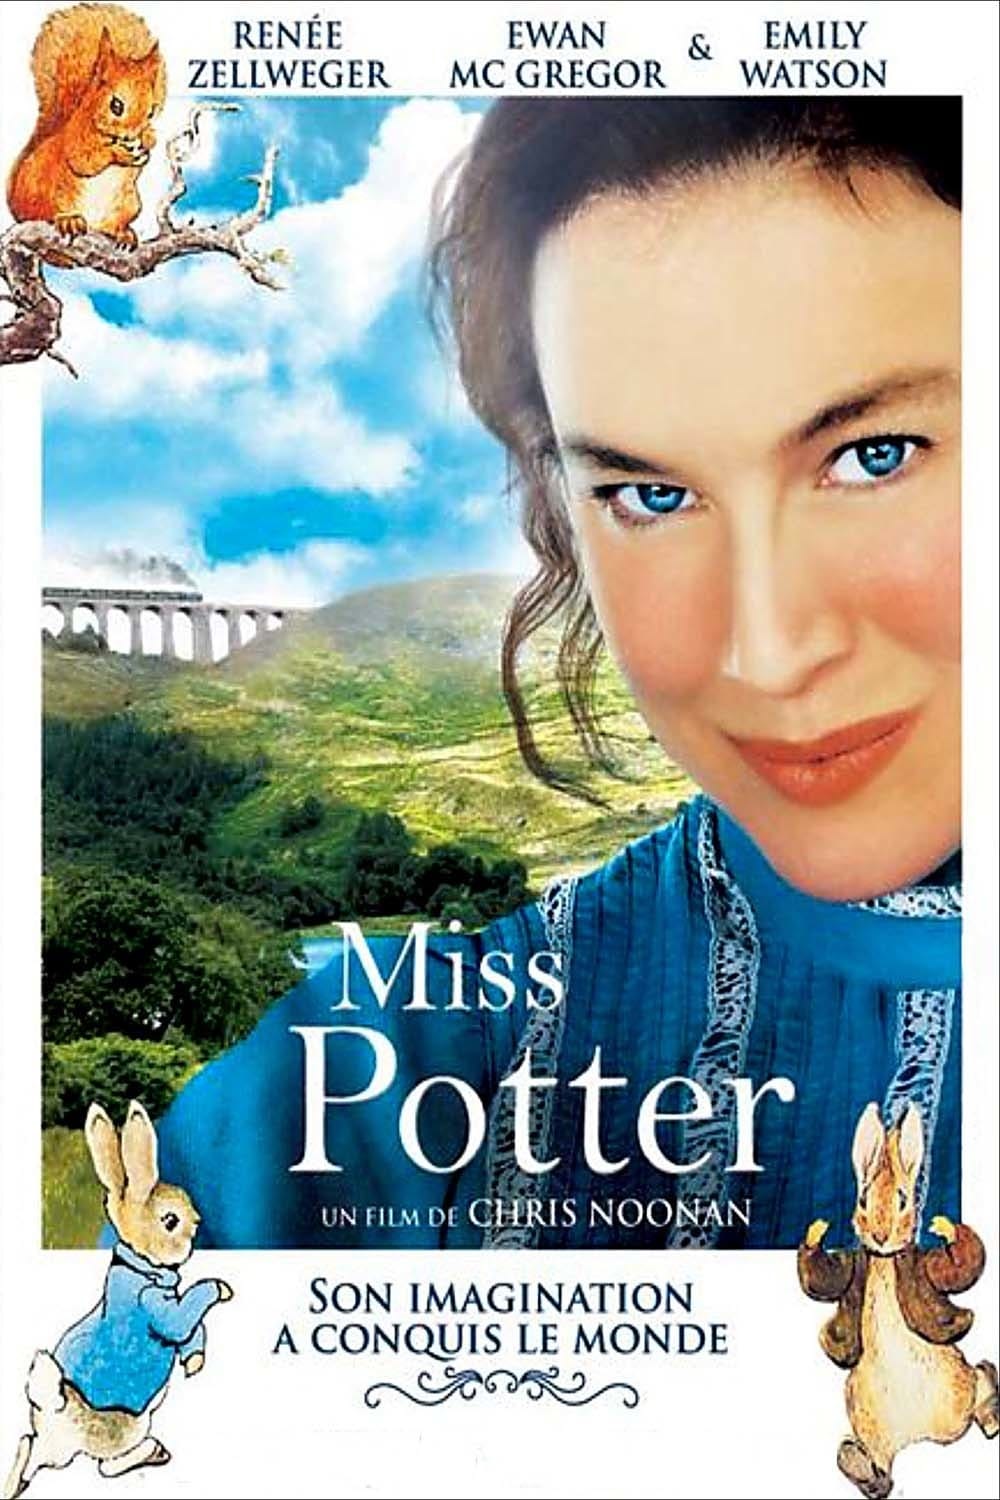 Miss Potter est-il disponible sur Netflix ou autre ?